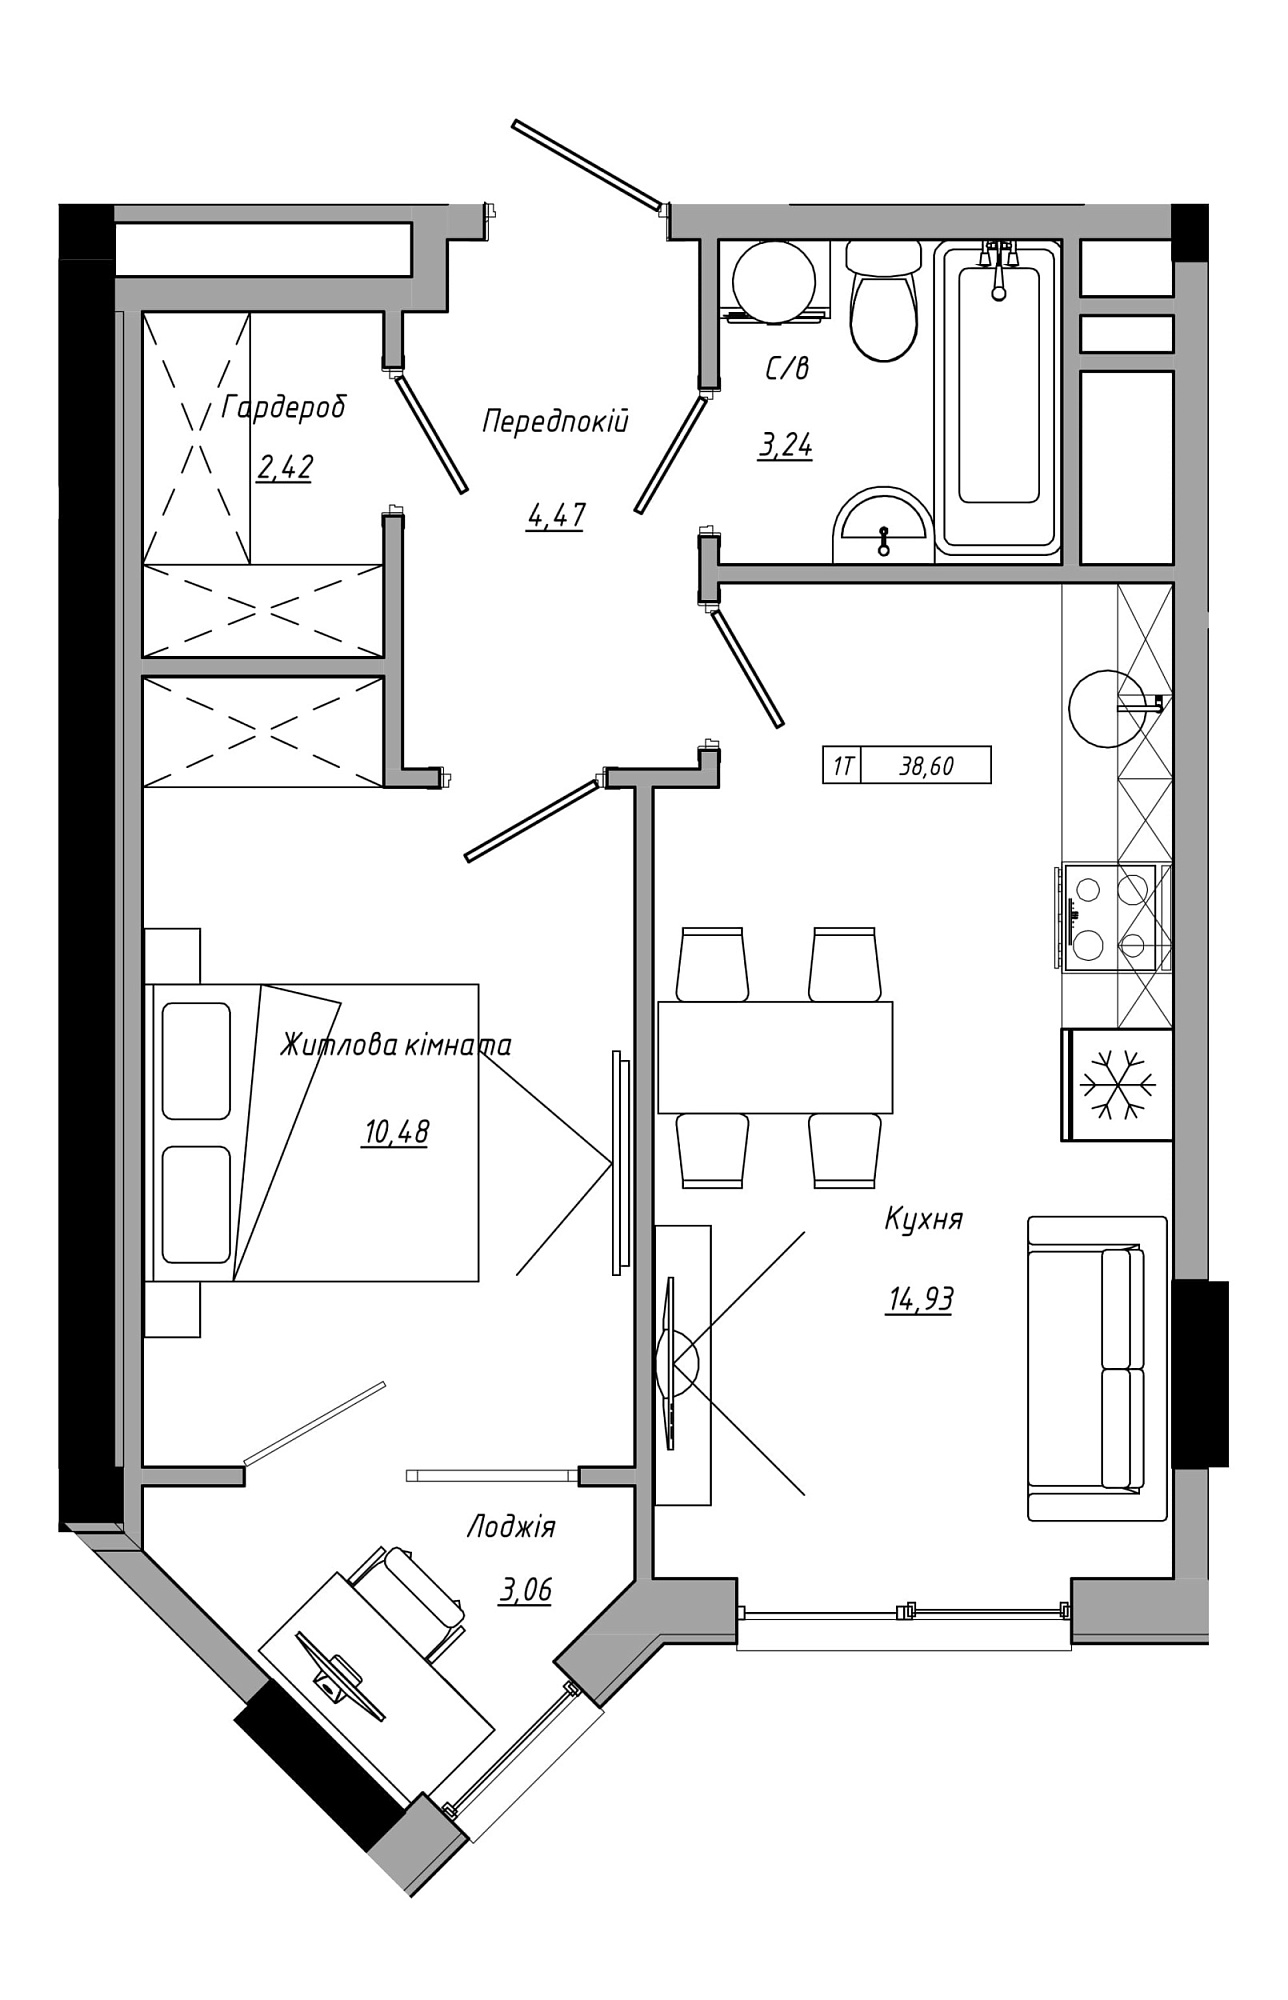 Планування 1-к квартира площею 38.6м2, AB-21-06/00022.